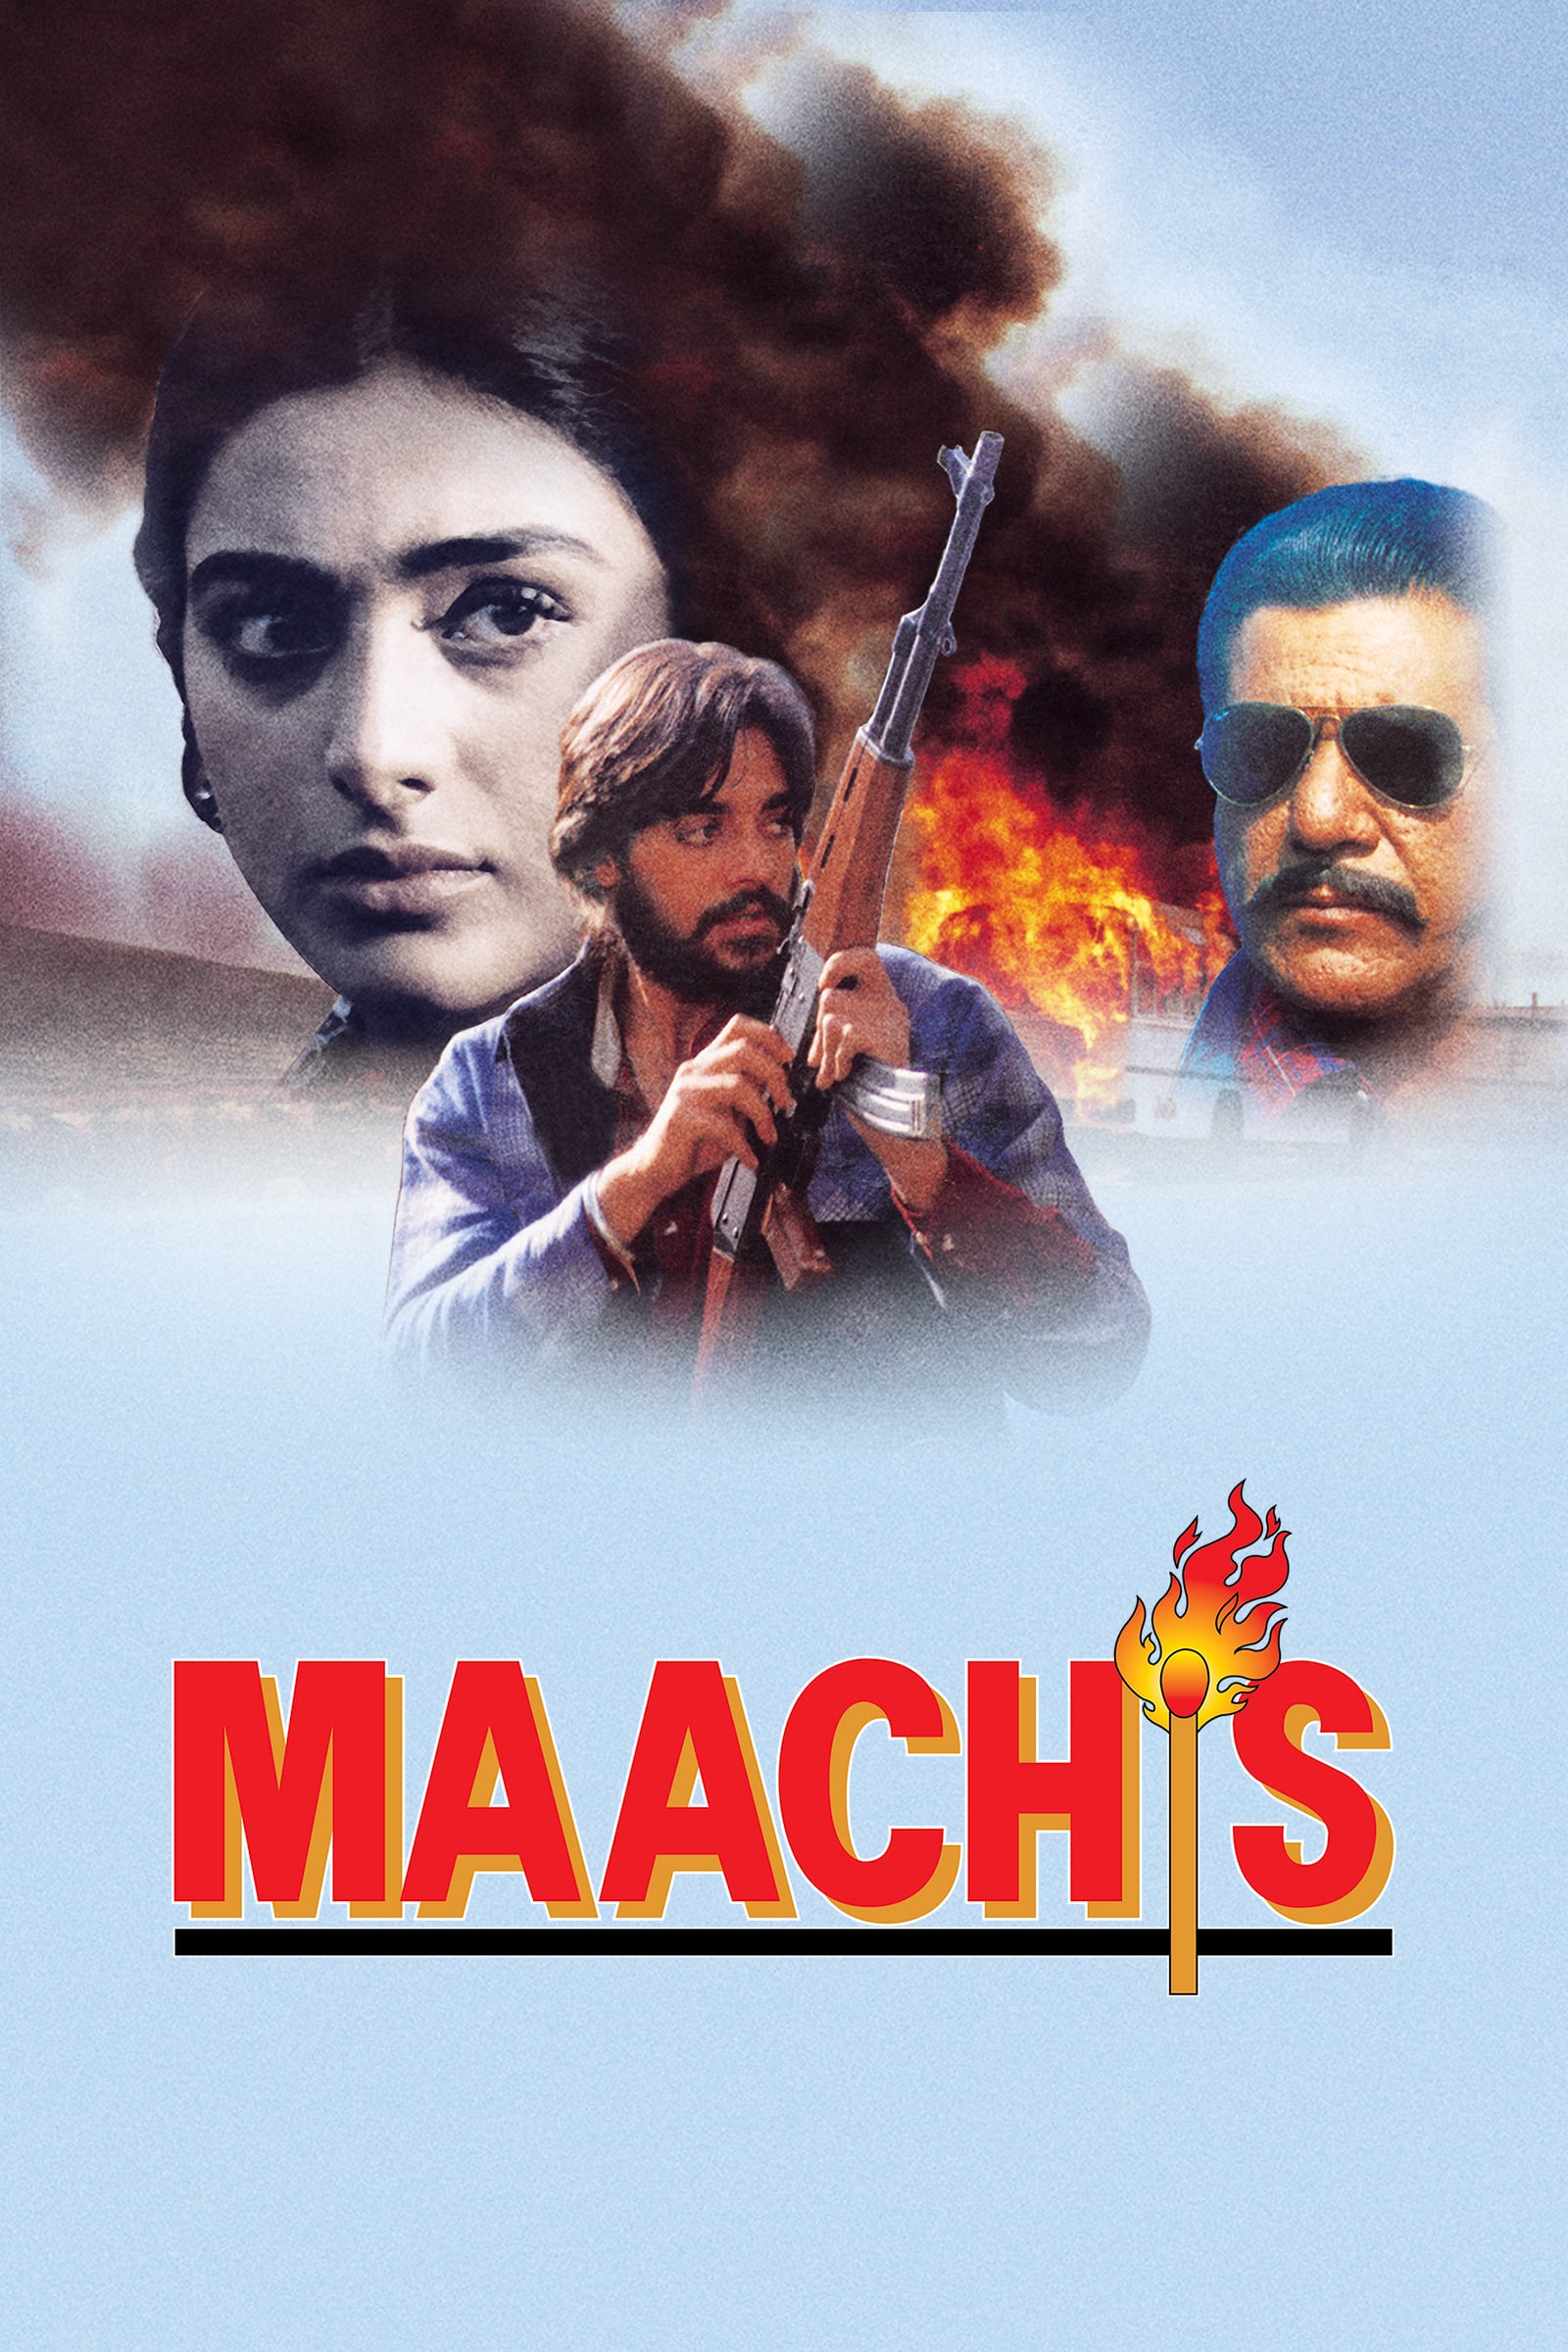 Maachis 1996 8301 Poster.jpg